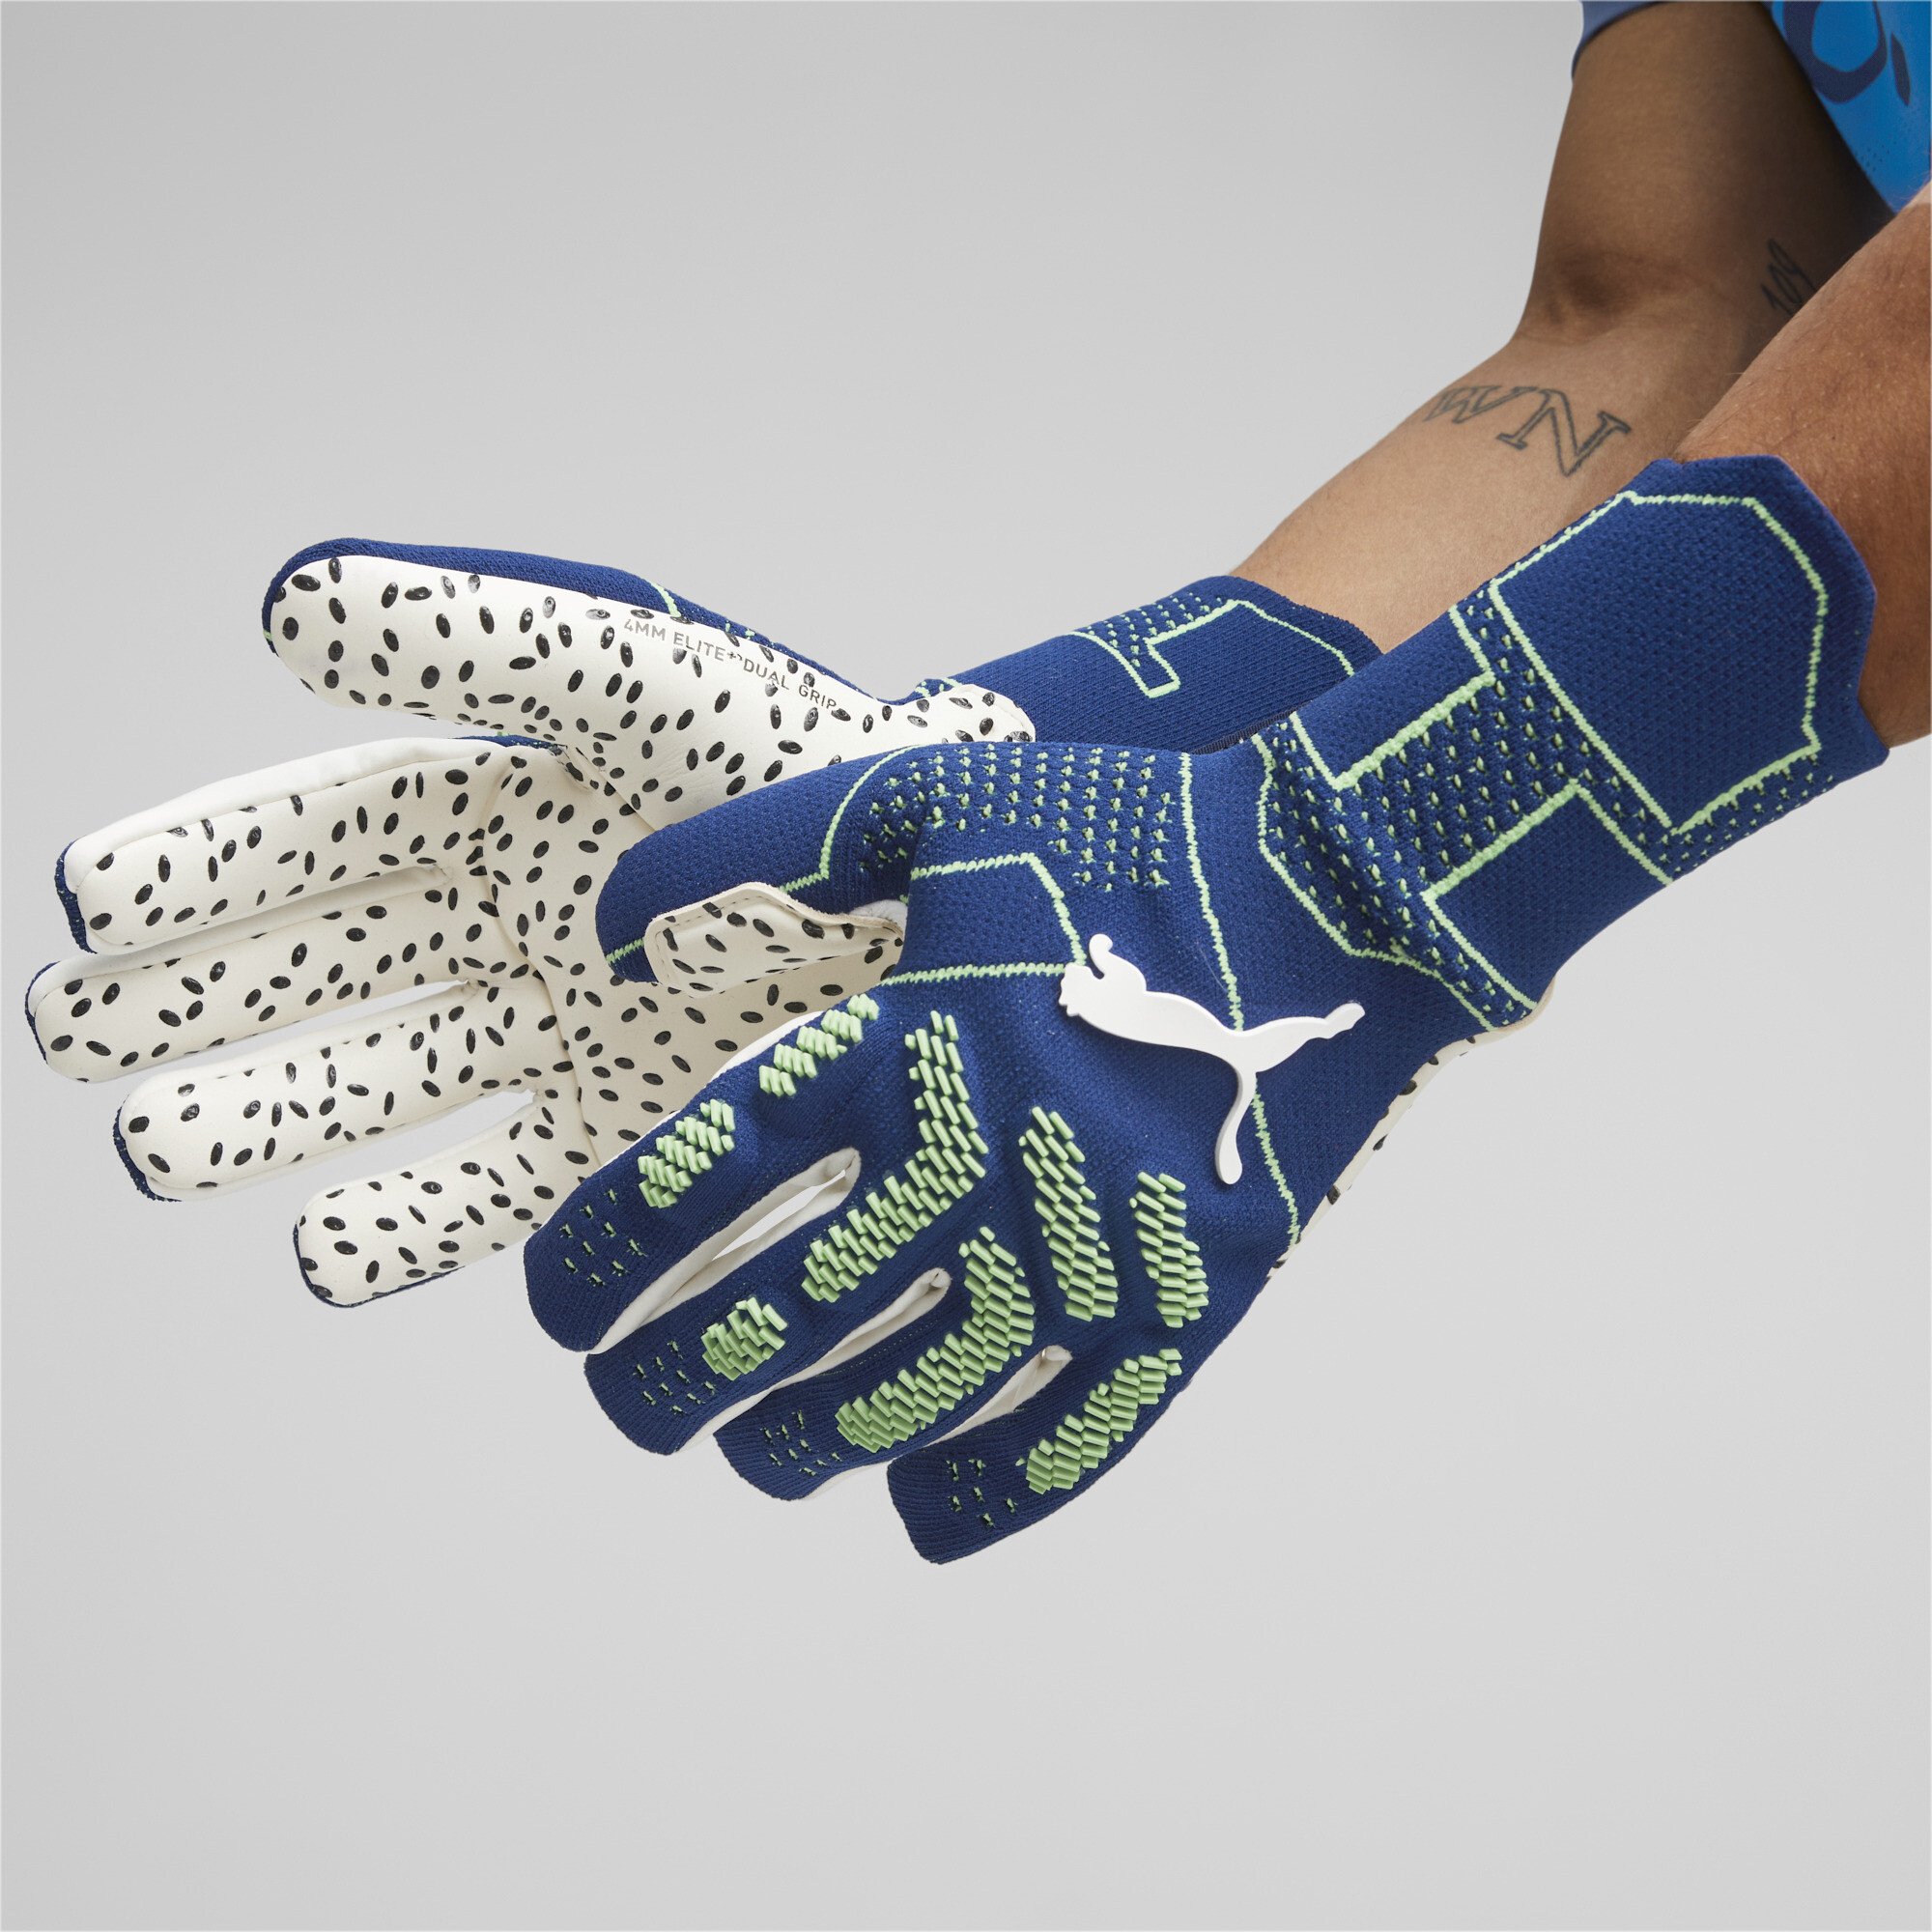 Men's Puma FUTURE Ultimate Negative Cut Football Goalkeeper Gloves, Blue, Size 7, Accessories